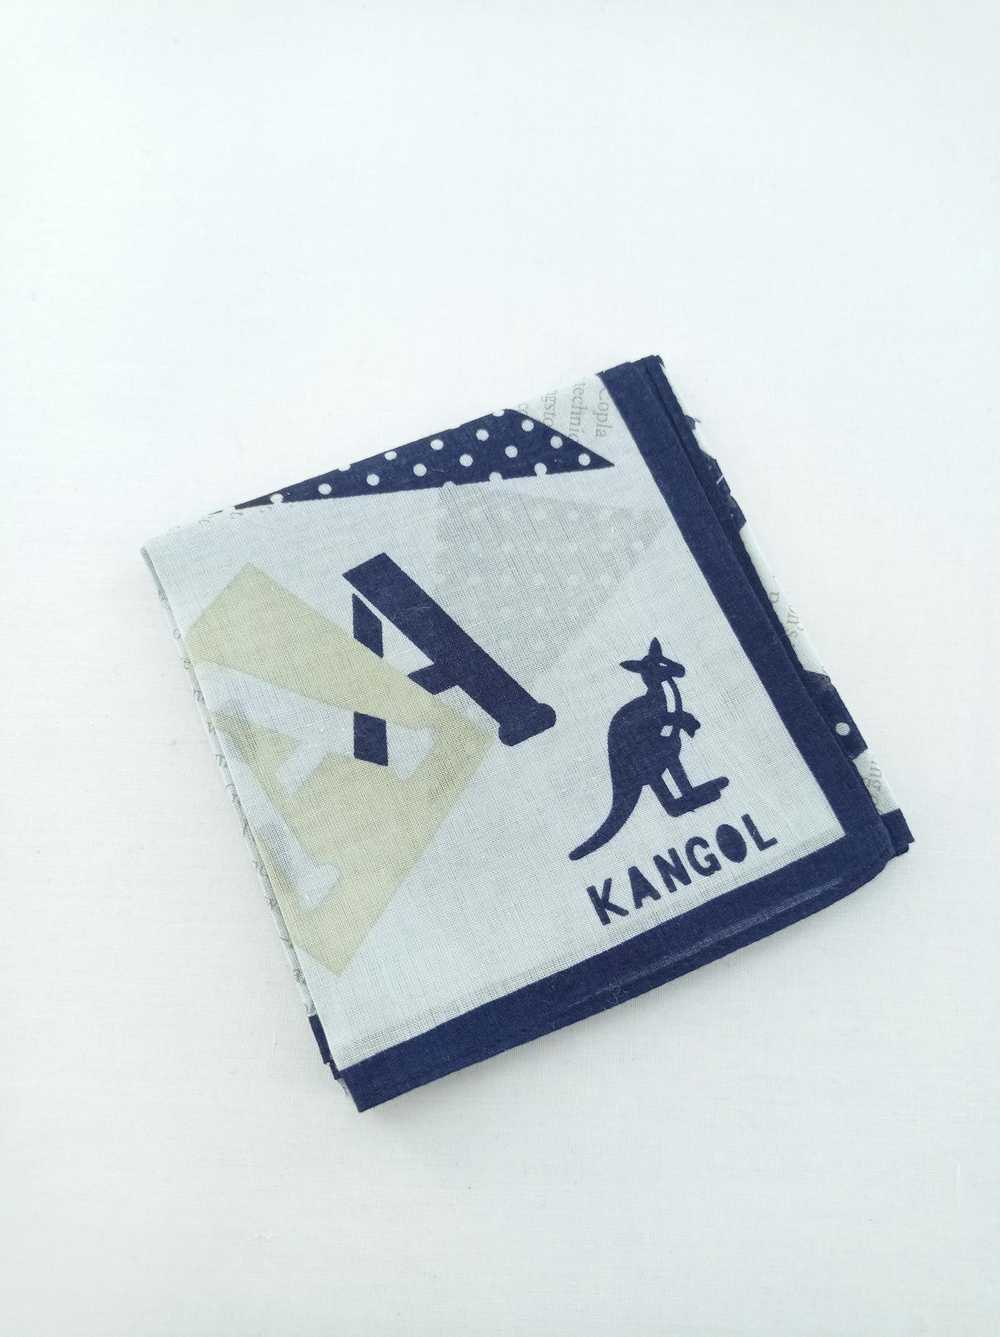 Kangol Kangol Handkerchief / Bandana / Neckwear - image 2